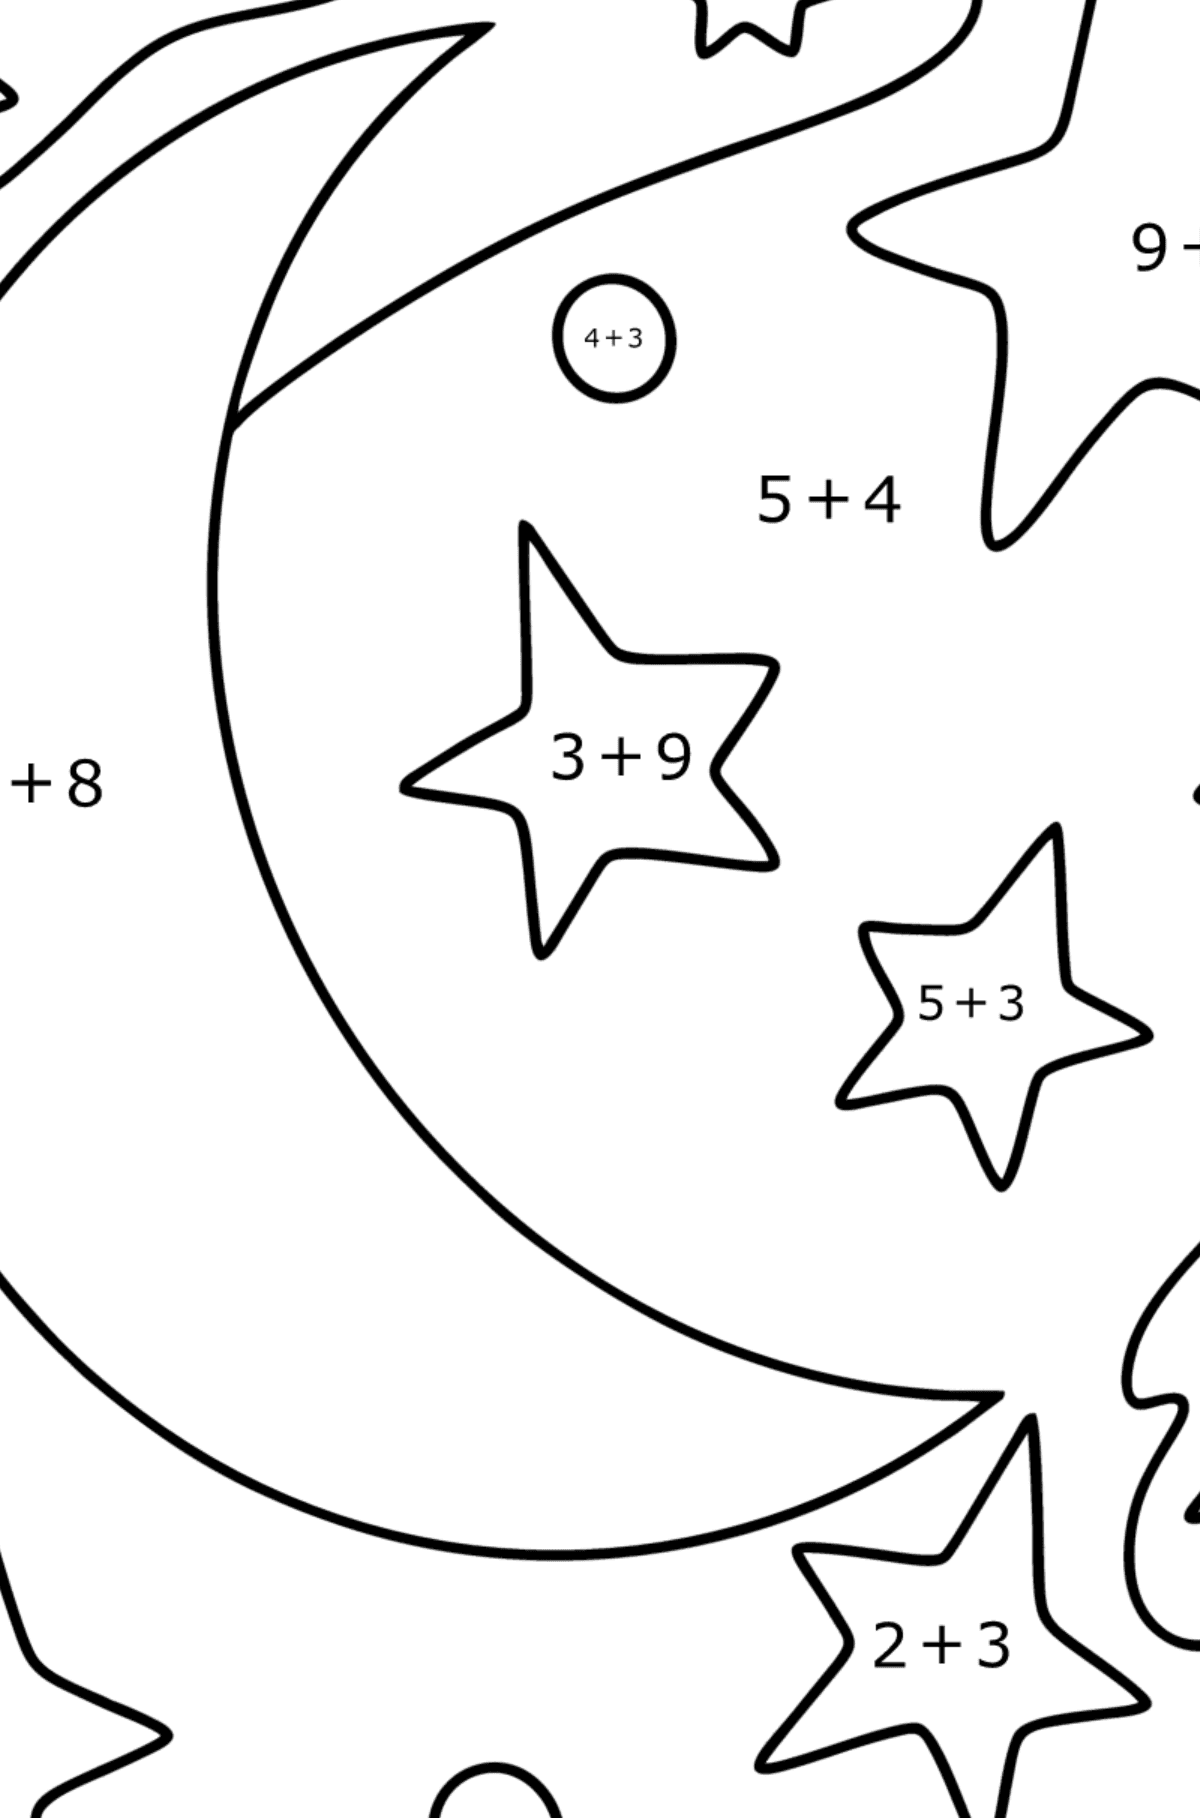 Månen og stjernene tegning til fargelegging - Matematisk fargeleggingsside - addisjon for barn